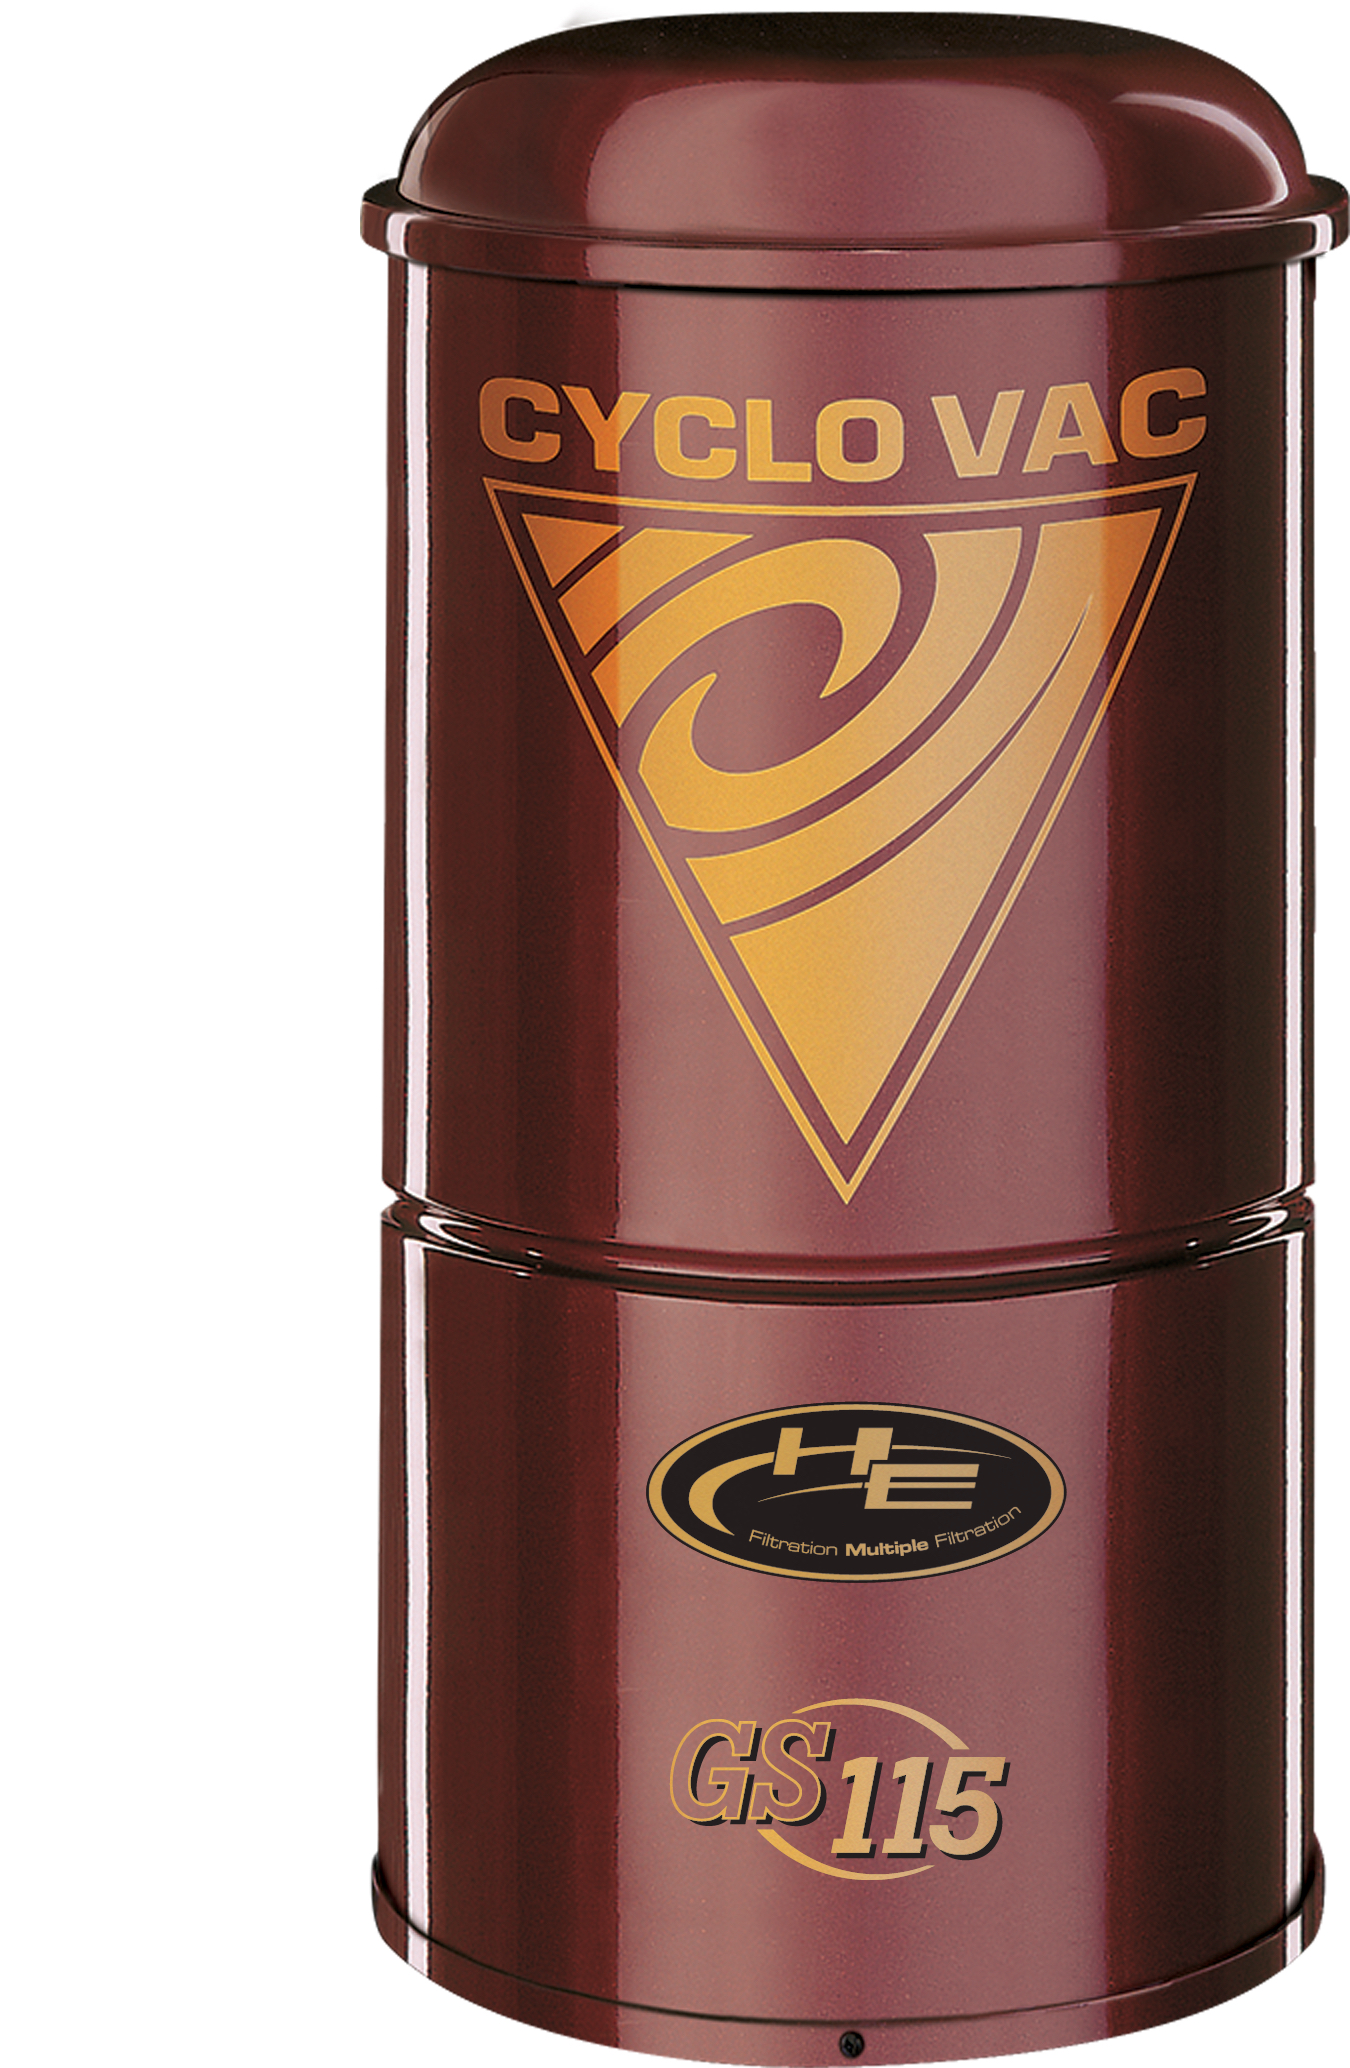 Cyclo Vac GS 115